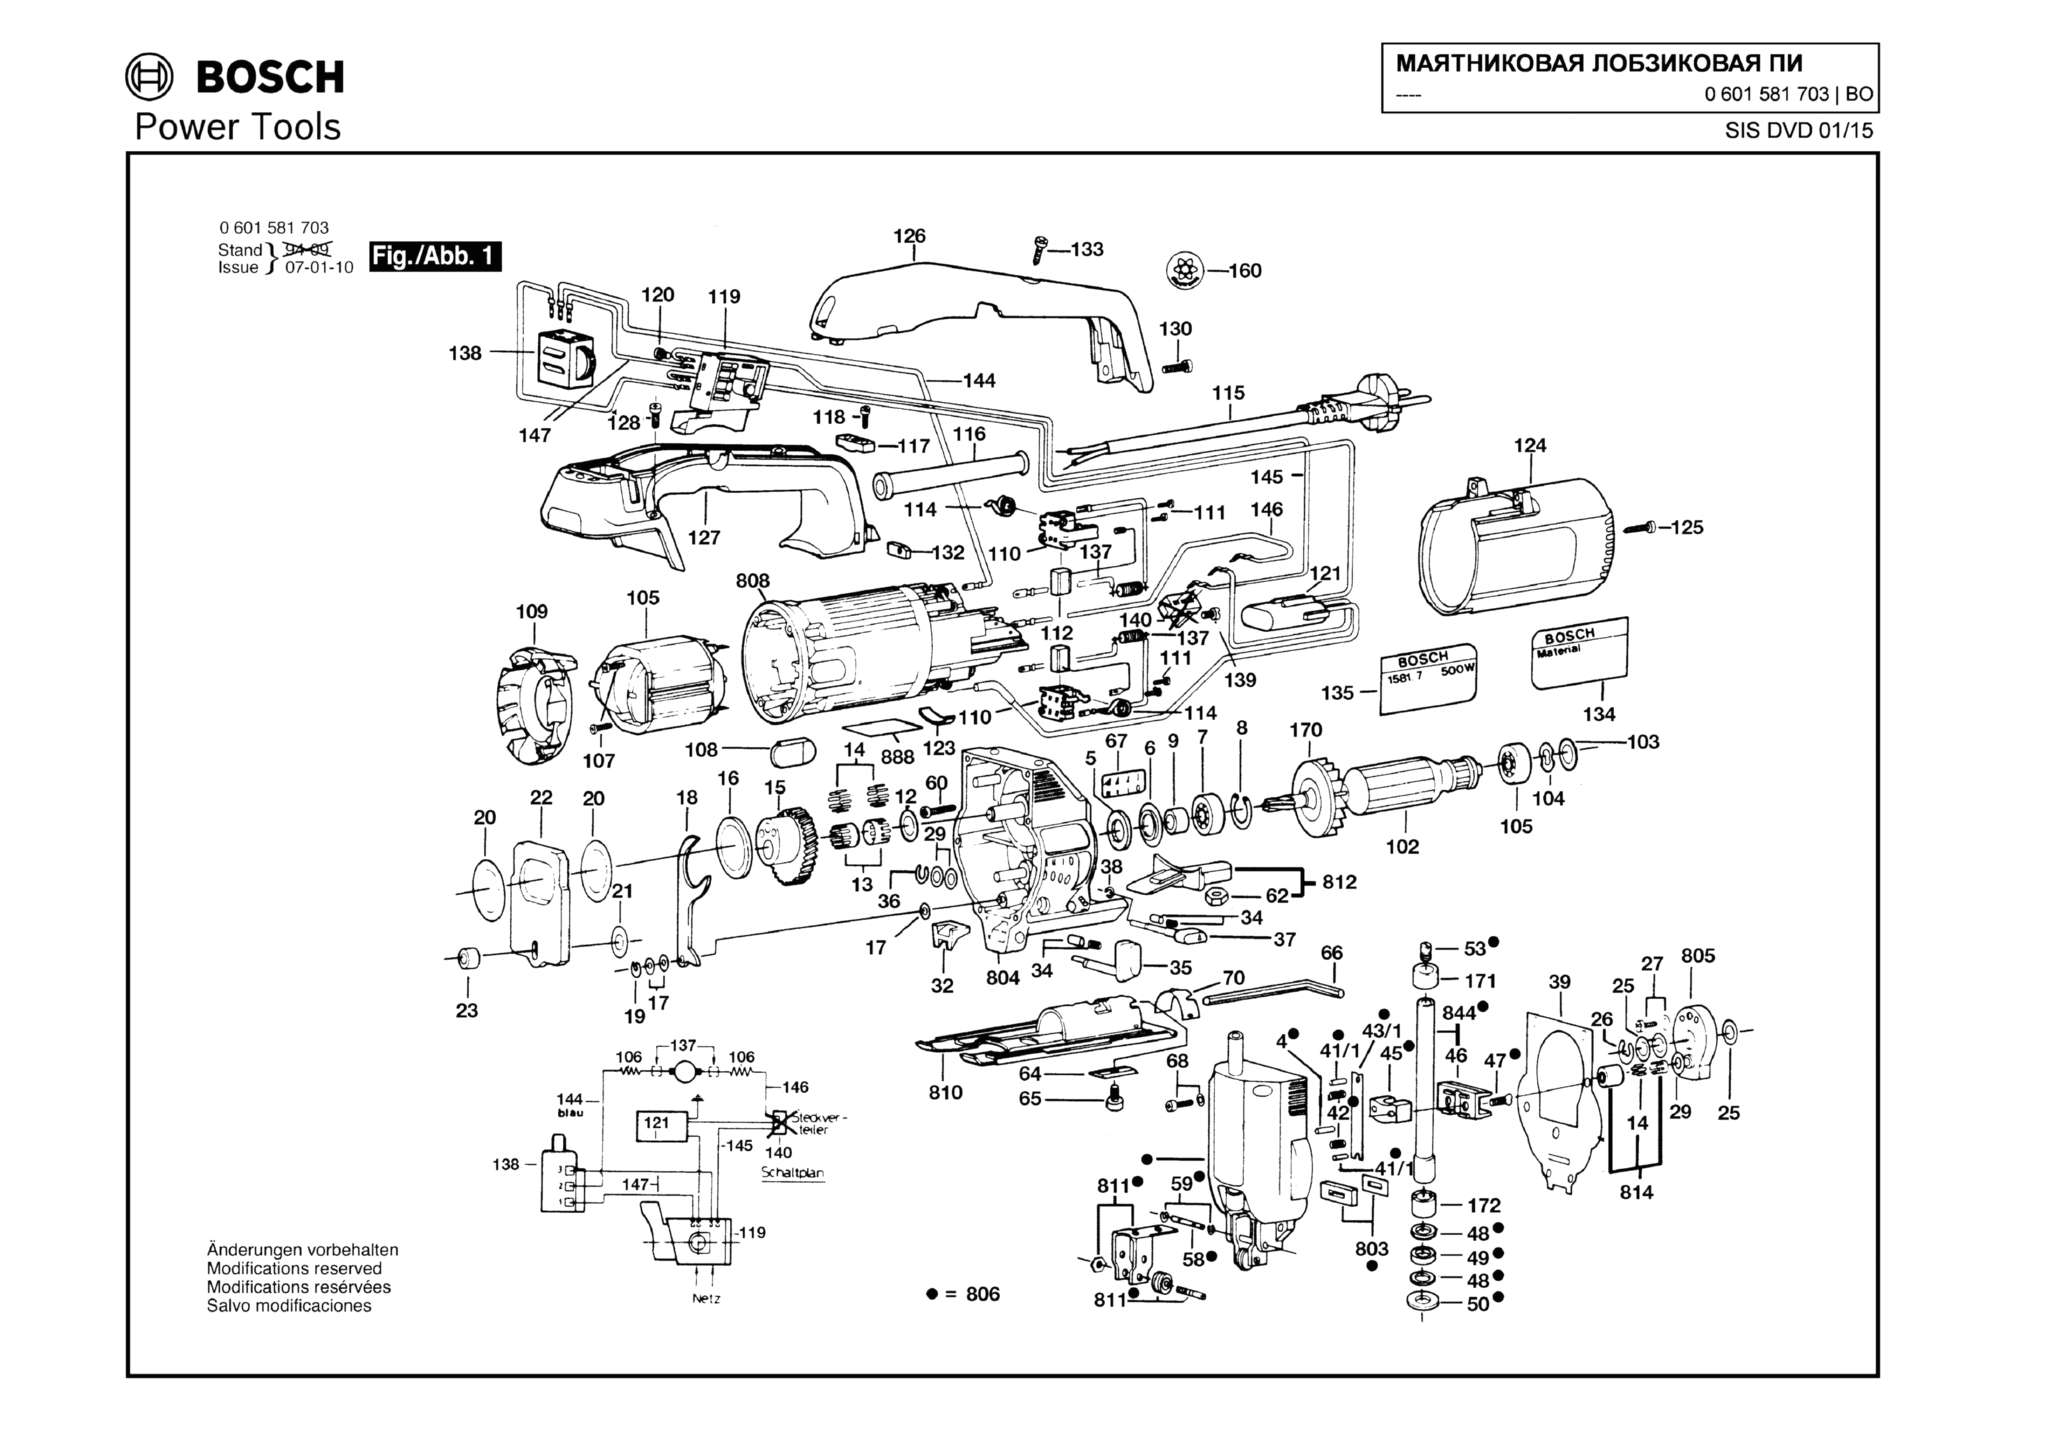 Запчасти, схема и деталировка Bosch (ТИП 0601581703)